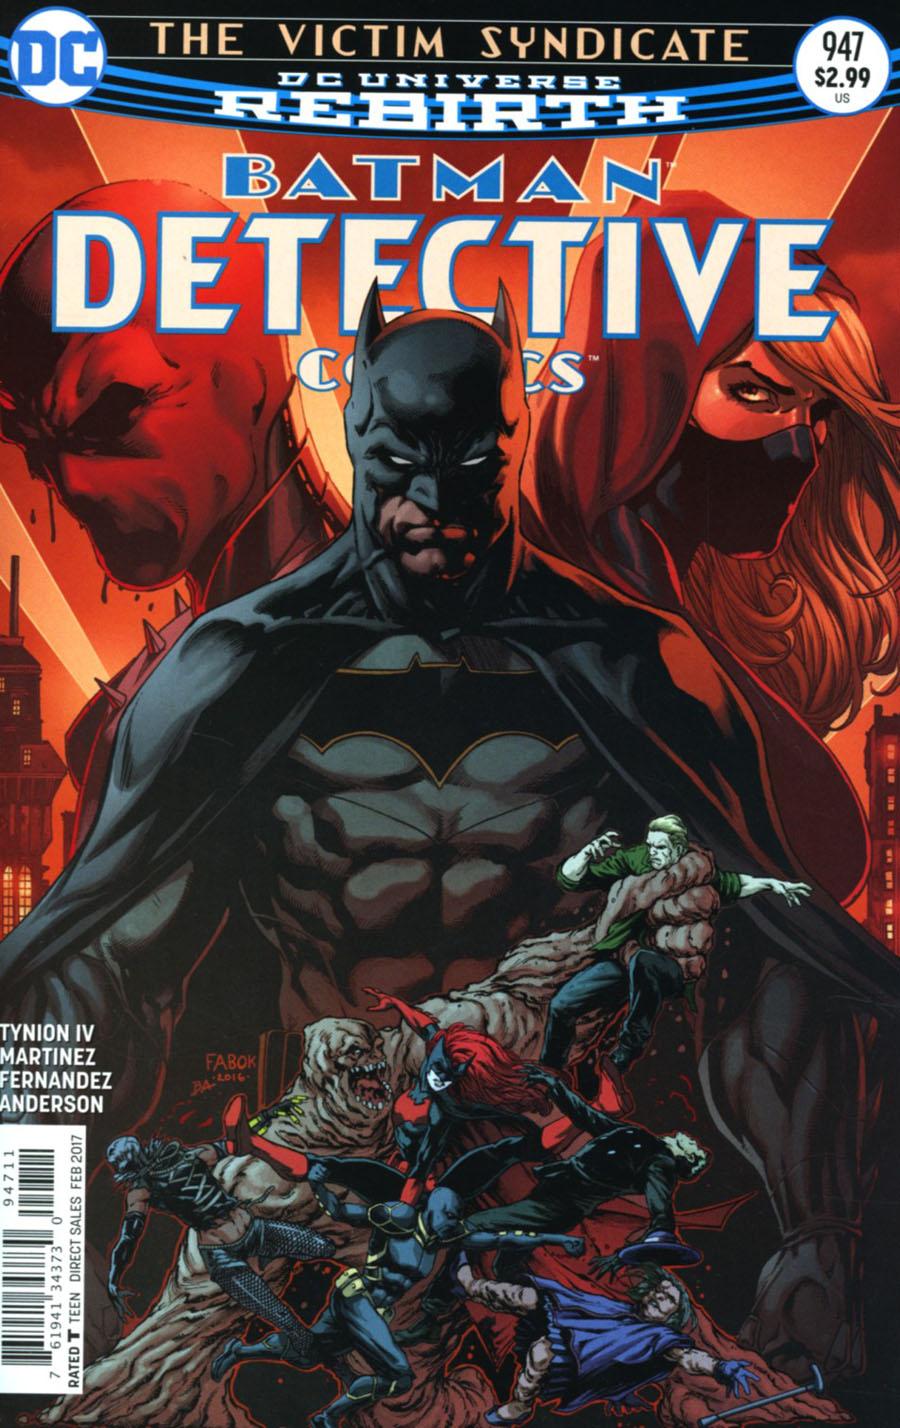 Detective Comics Vol. 2 #947